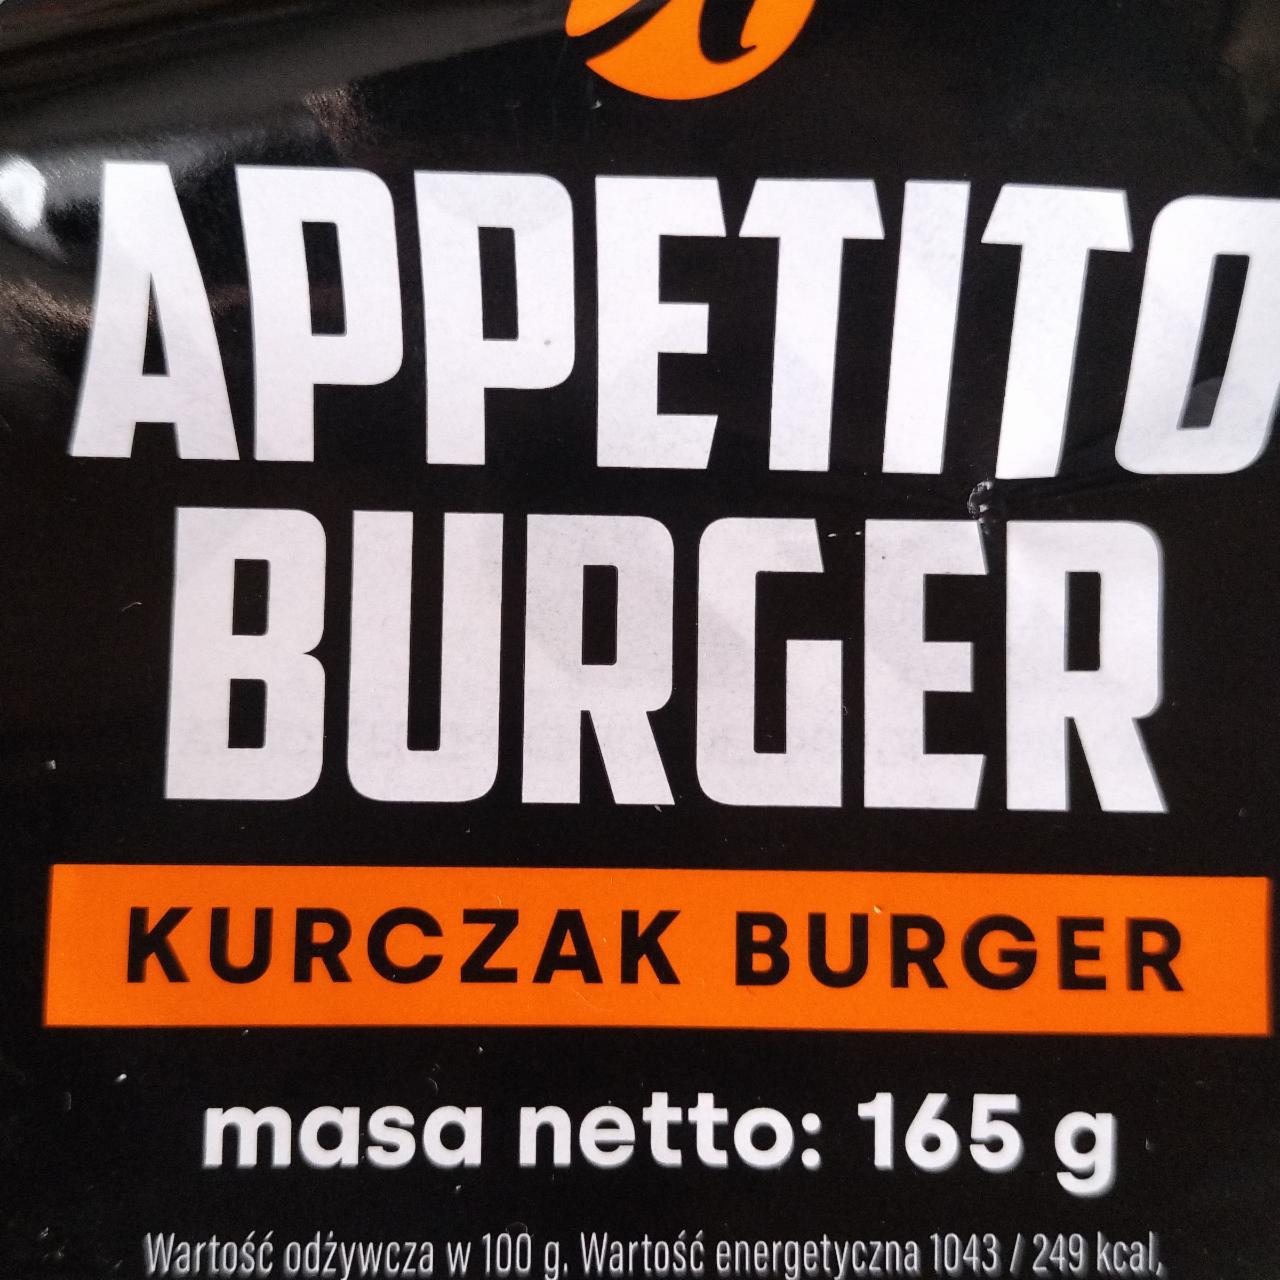 Zdjęcia - Kurczak burger Appetito Burger